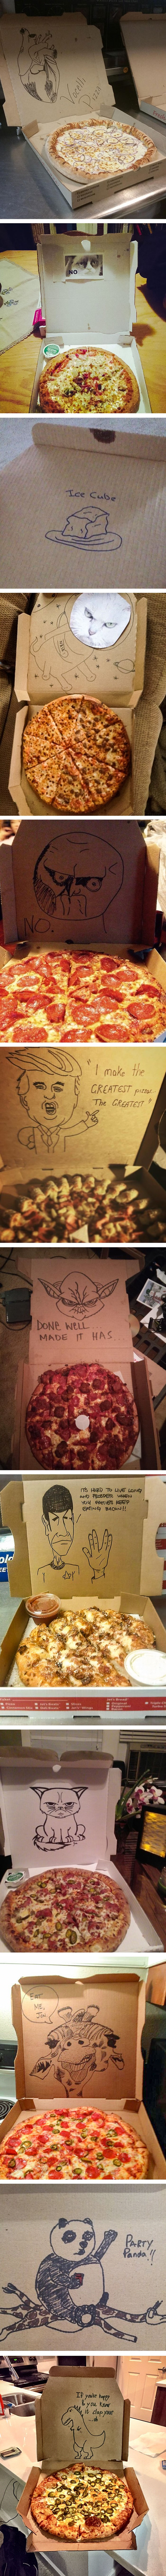 Ljudi su podijelili najsmješnije crteže i šale koje su dobili na kutijama pizze